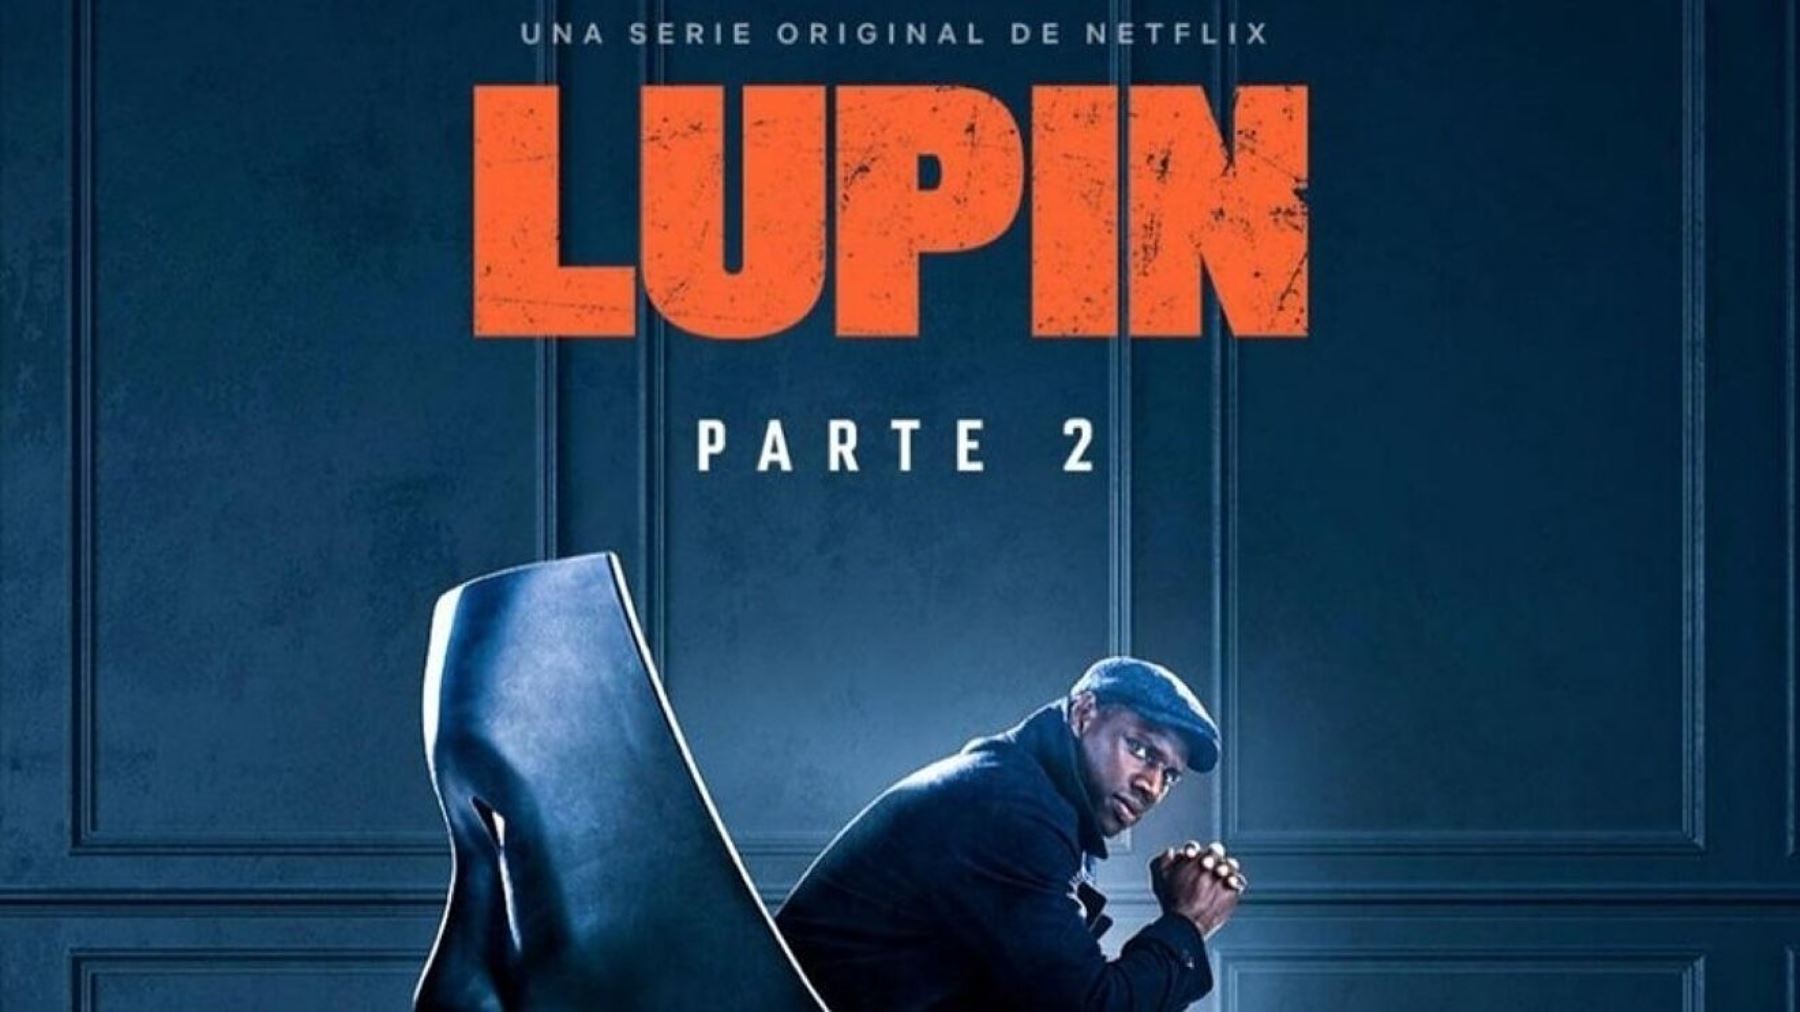 Segunda parte de "Lupin" llega a Netflix el 11 de junio